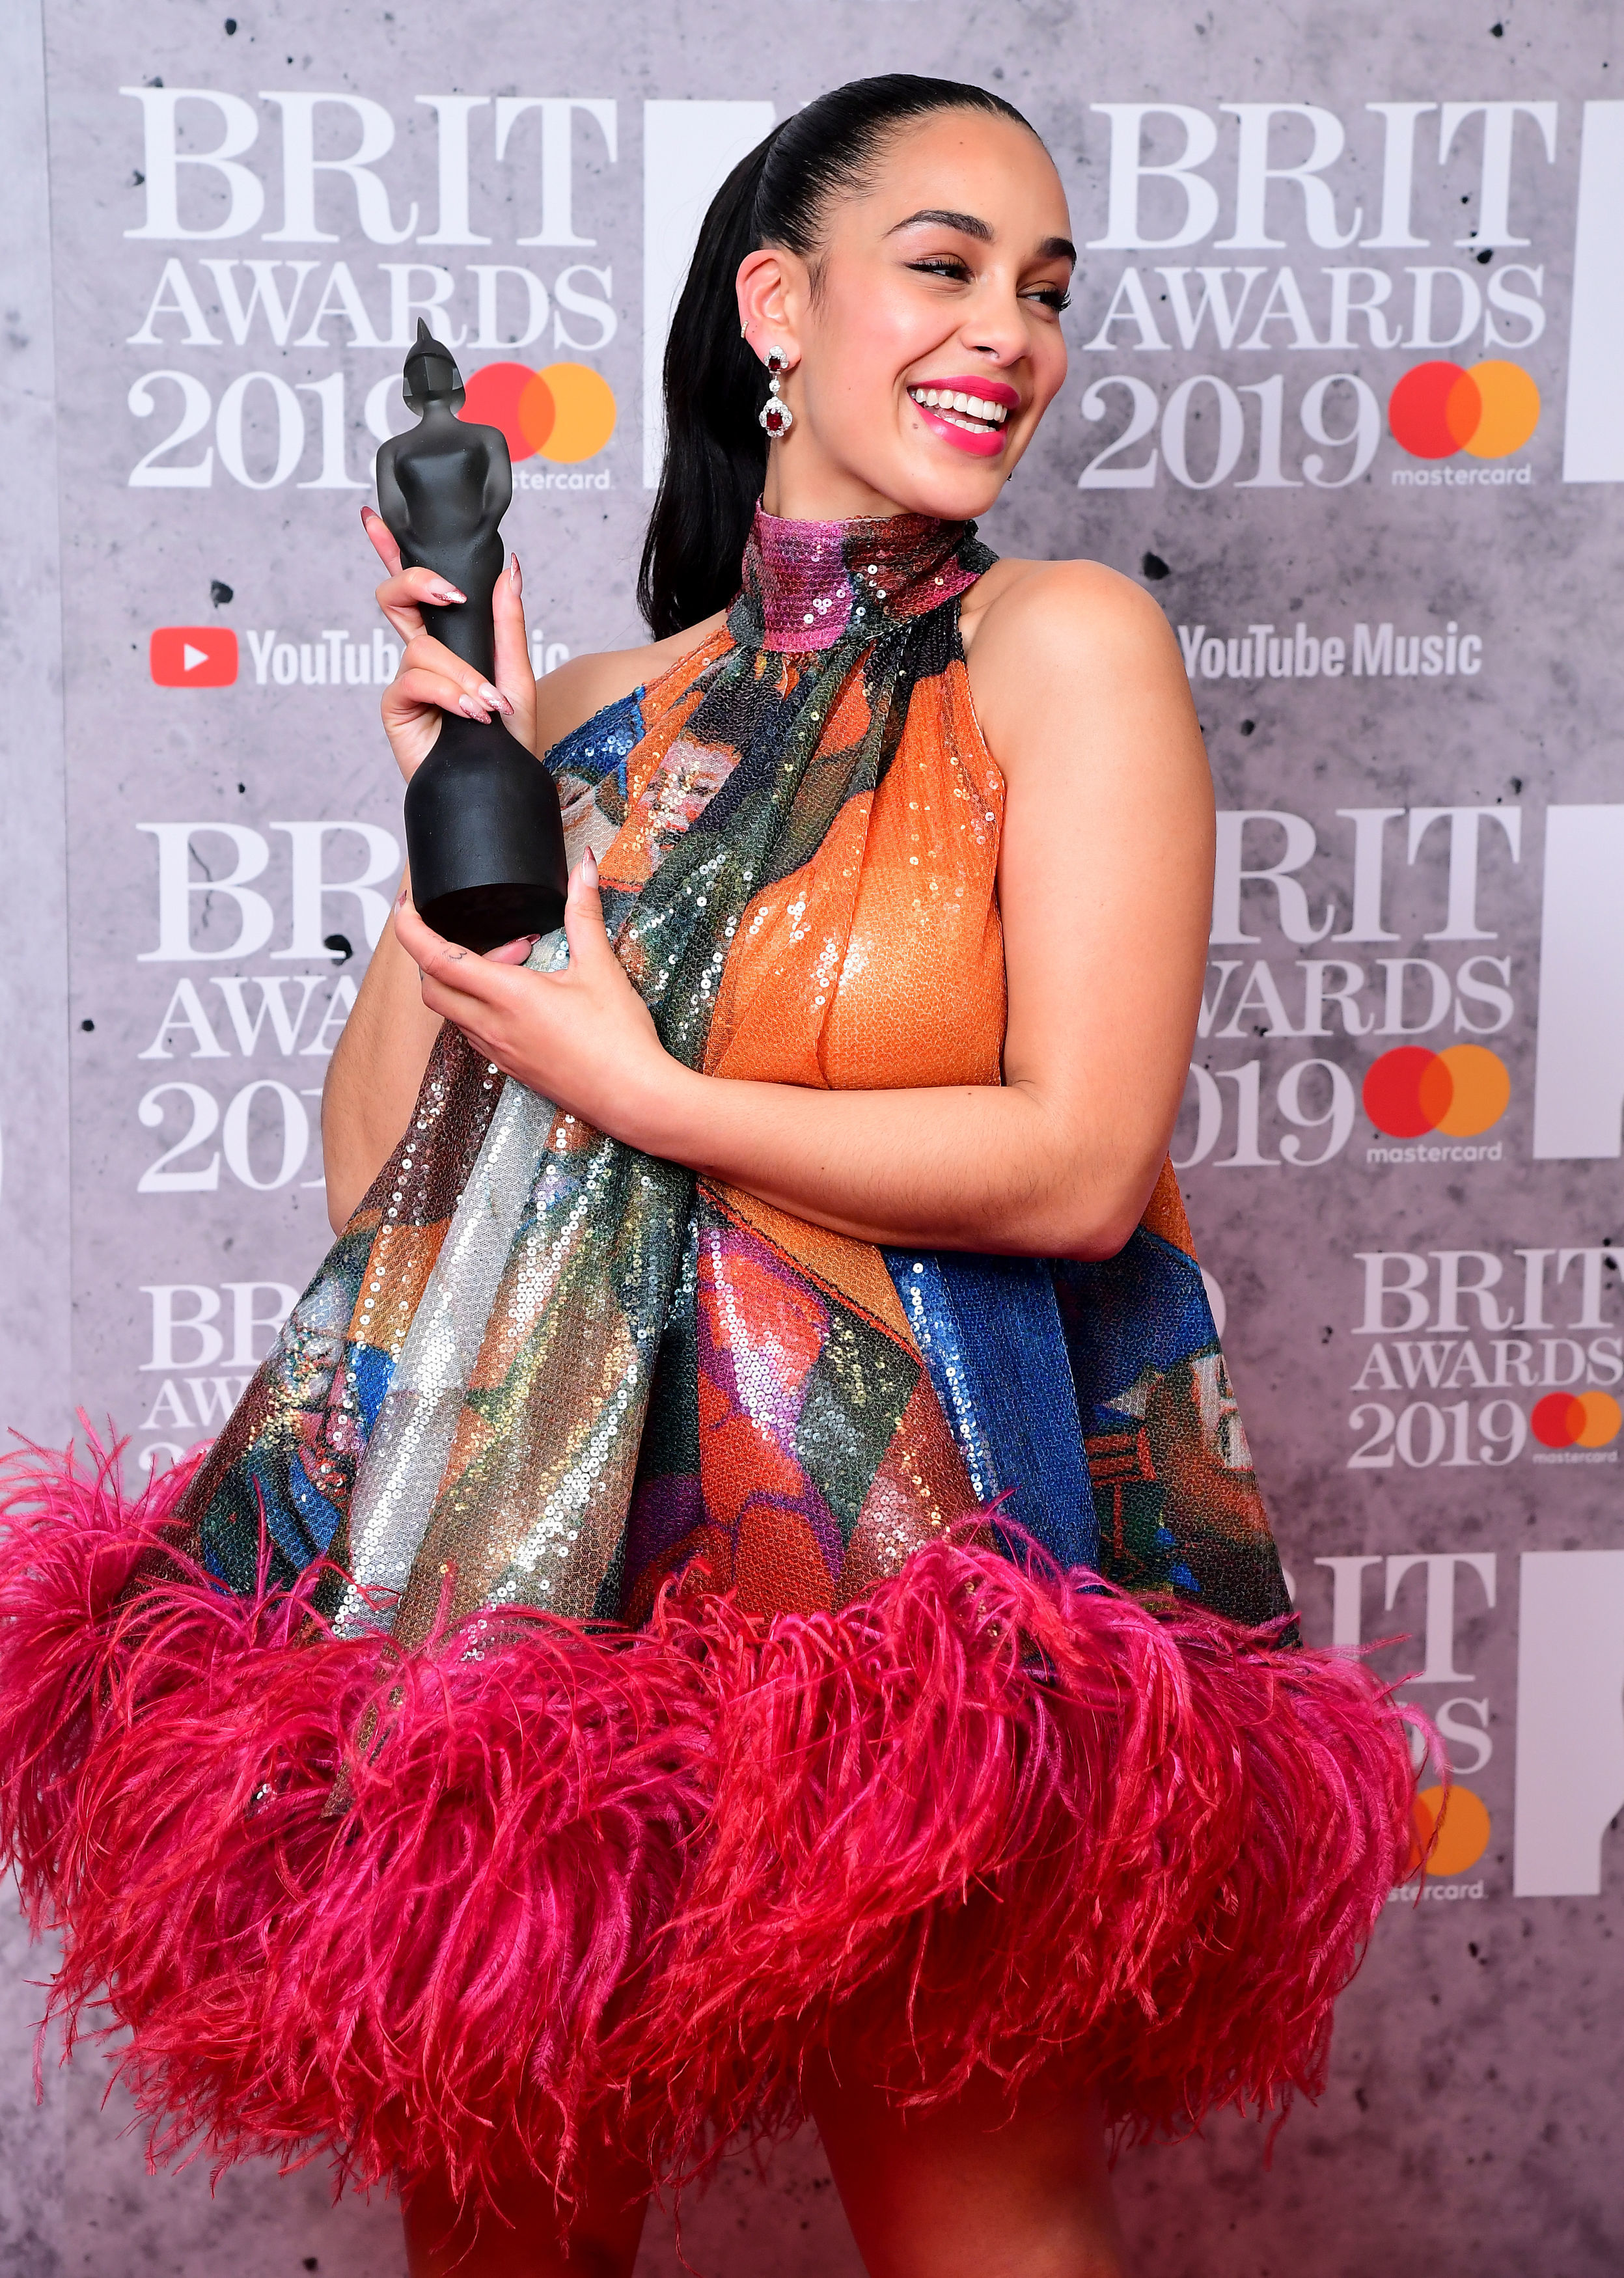 Jorja Smith with her Best British Female Solo Artist Brit Award